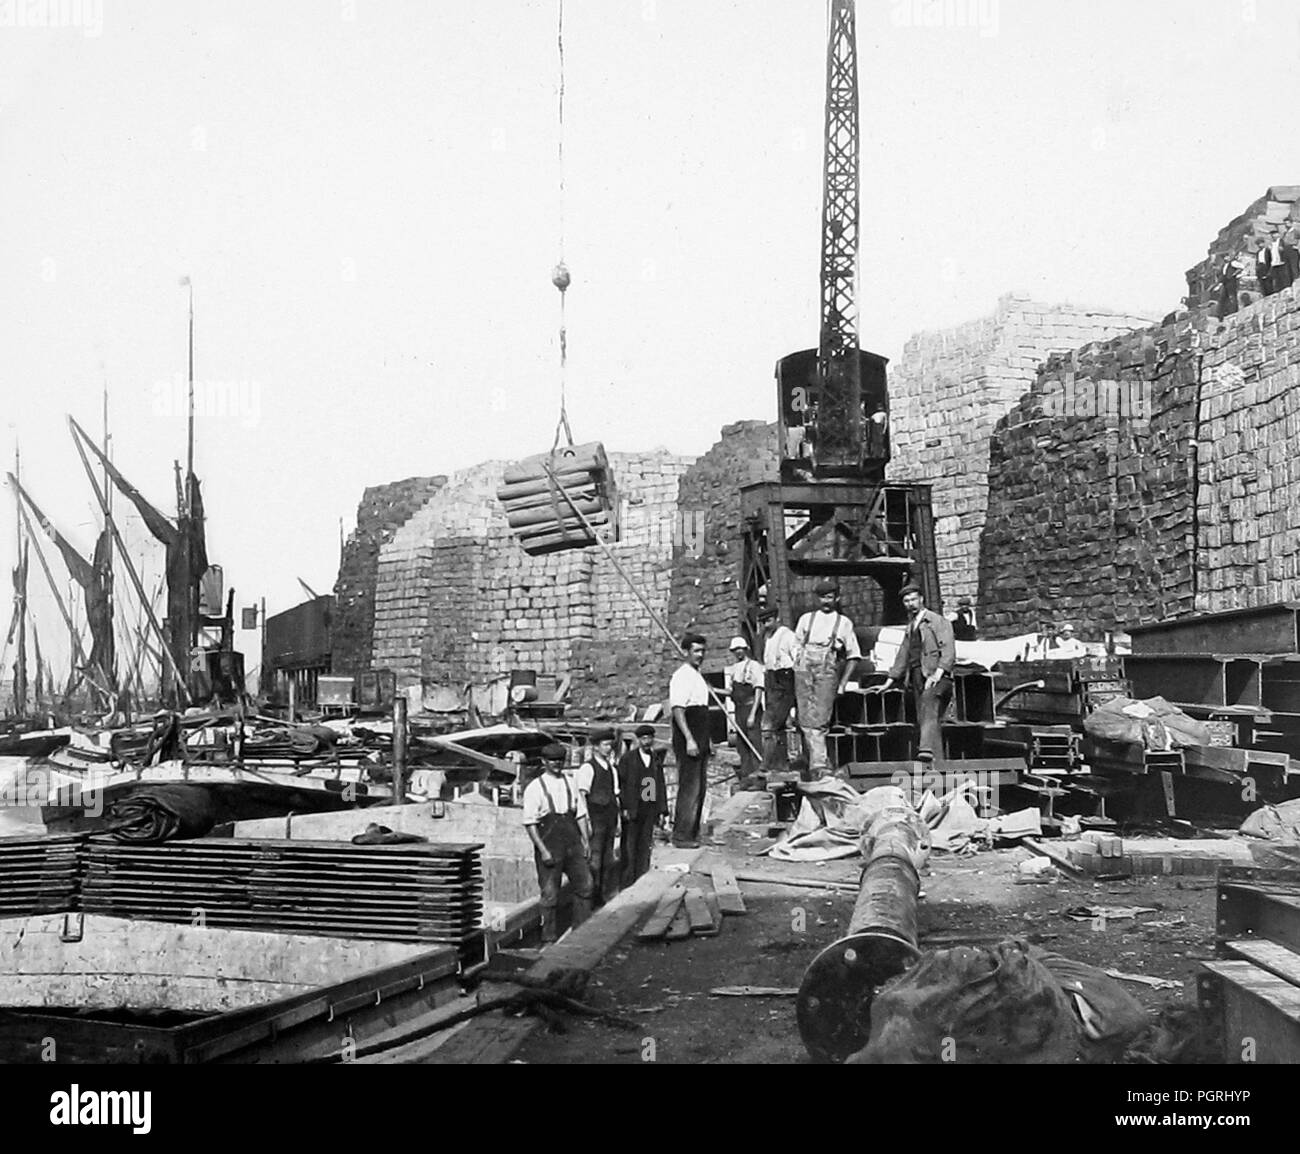 Lo scarico della pasta, docks londinesi, agli inizi del novecento Foto Stock